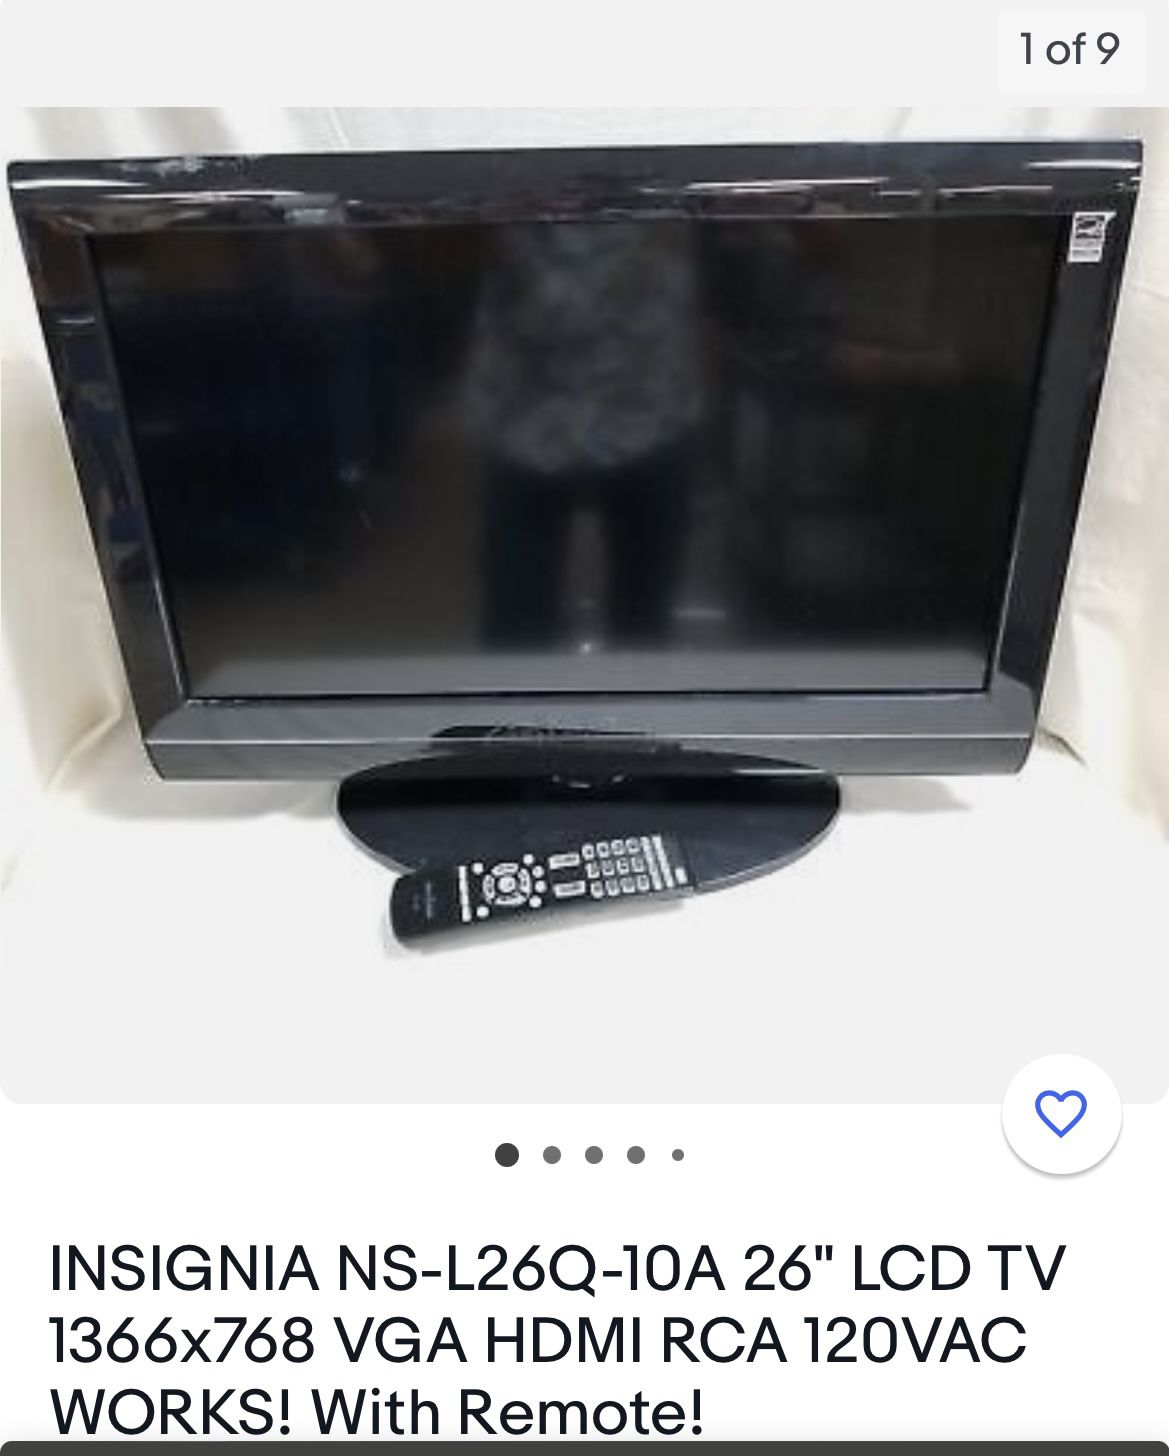 Insignia 26” LCD TV w/remote 